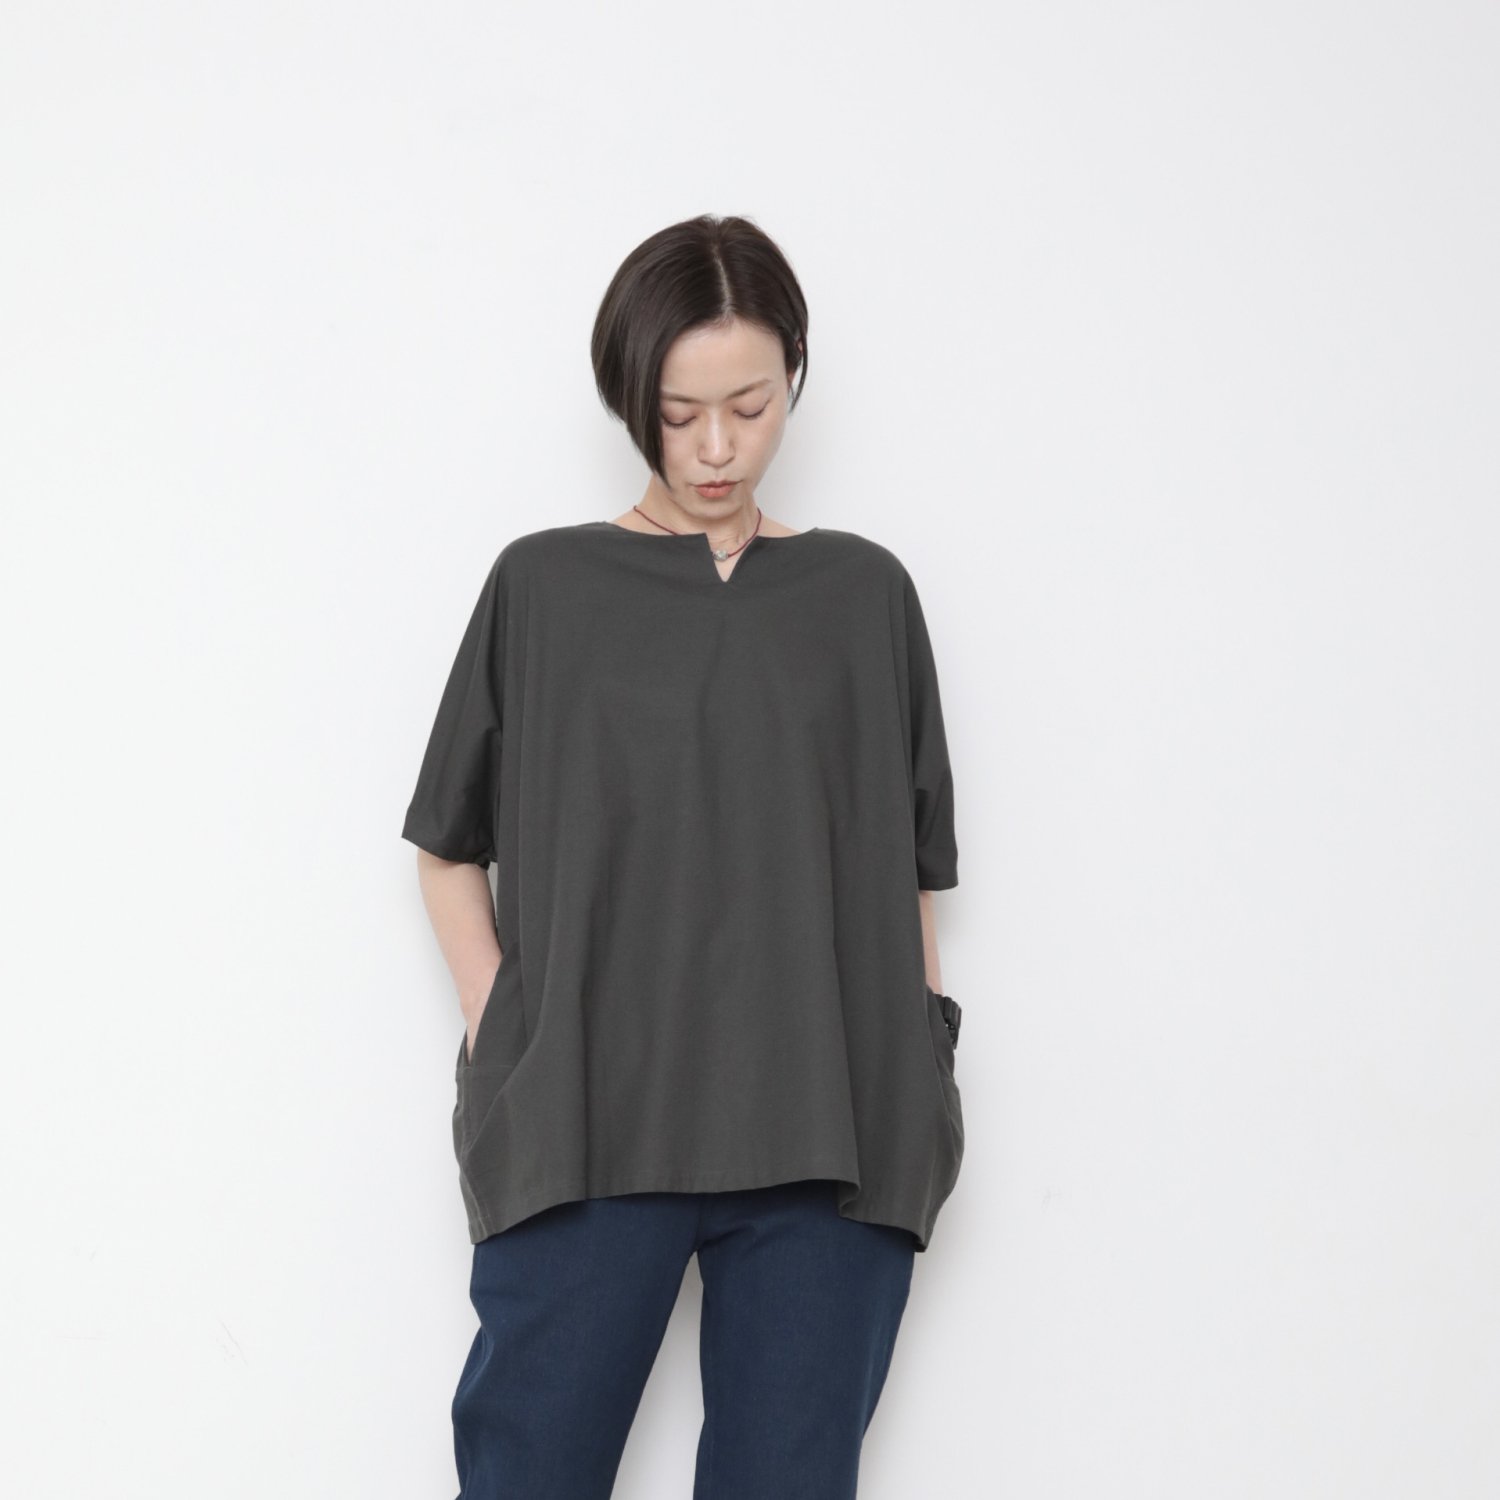 Oton shirts / sumikuro